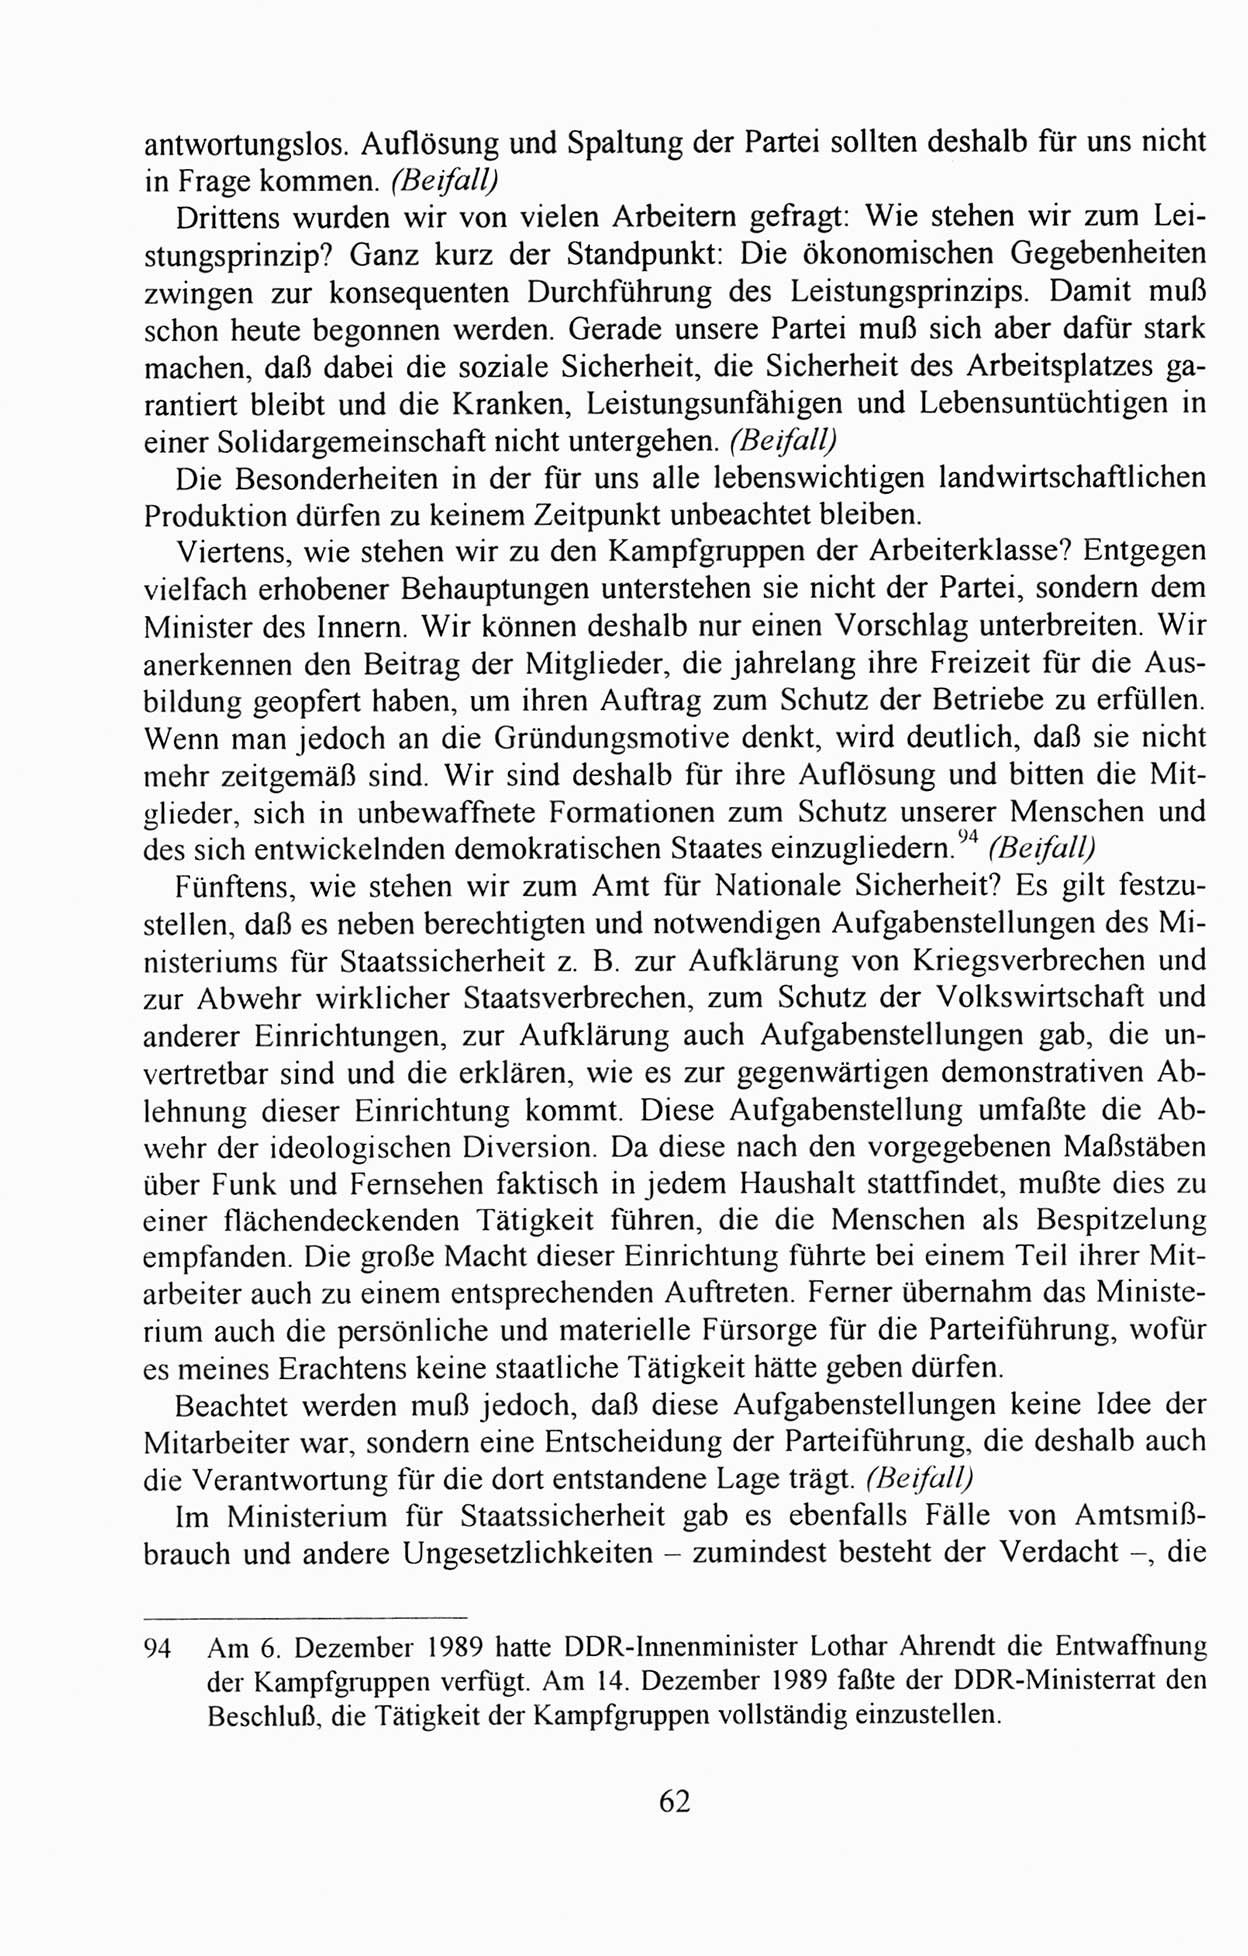 AuÃŸerordentlicher Parteitag der SED/PDS (Sozialistische Einheitspartei Deutschlands/Partei des Demokratischen Sozialismus) [Deutsche Demokratische Republik (DDR)], Protokoll der Beratungen am 8./9. und 16./17.12.1989 in Berlin 1989, Seite 62 (PT. SED/PDS DDR Prot. 1989, S. 62)